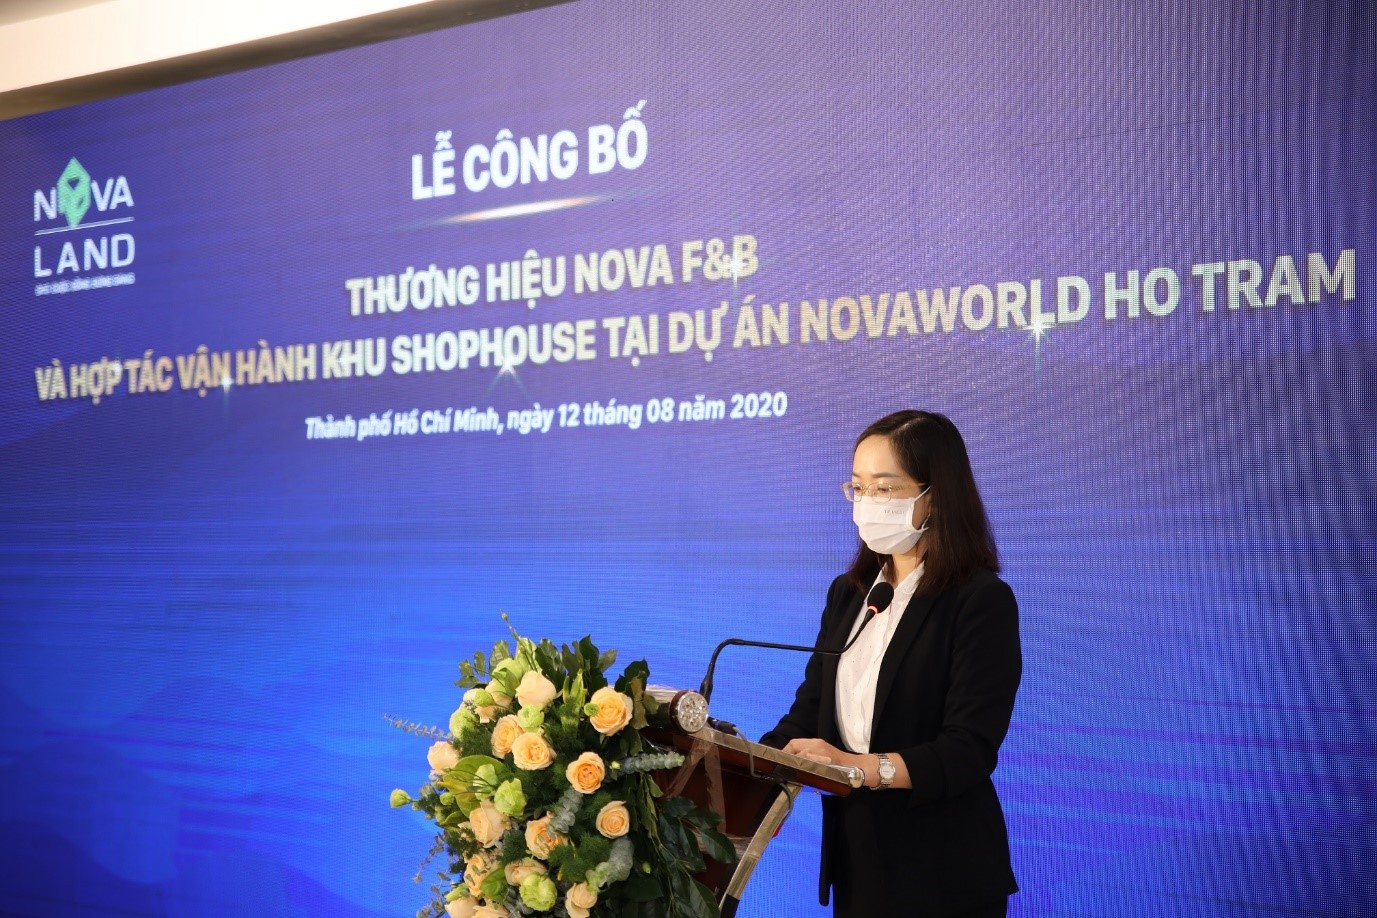 Bà Võ Đoan Thùy - Giám đốc điều hành Nova F&B phát biểu tại sự kiện 